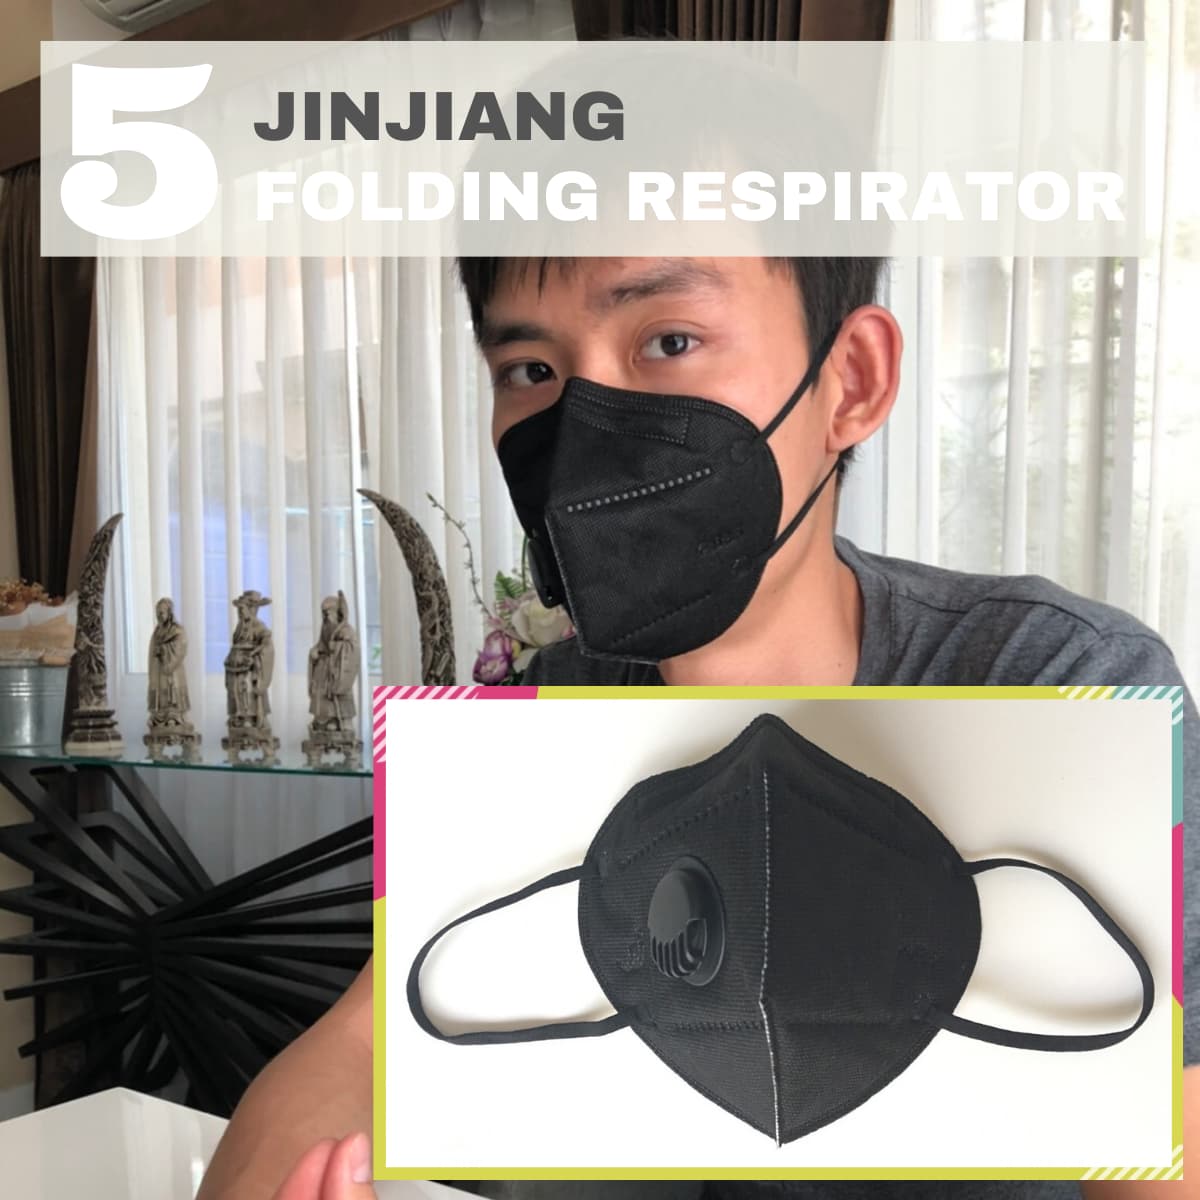 JINJIANG Folding respirator